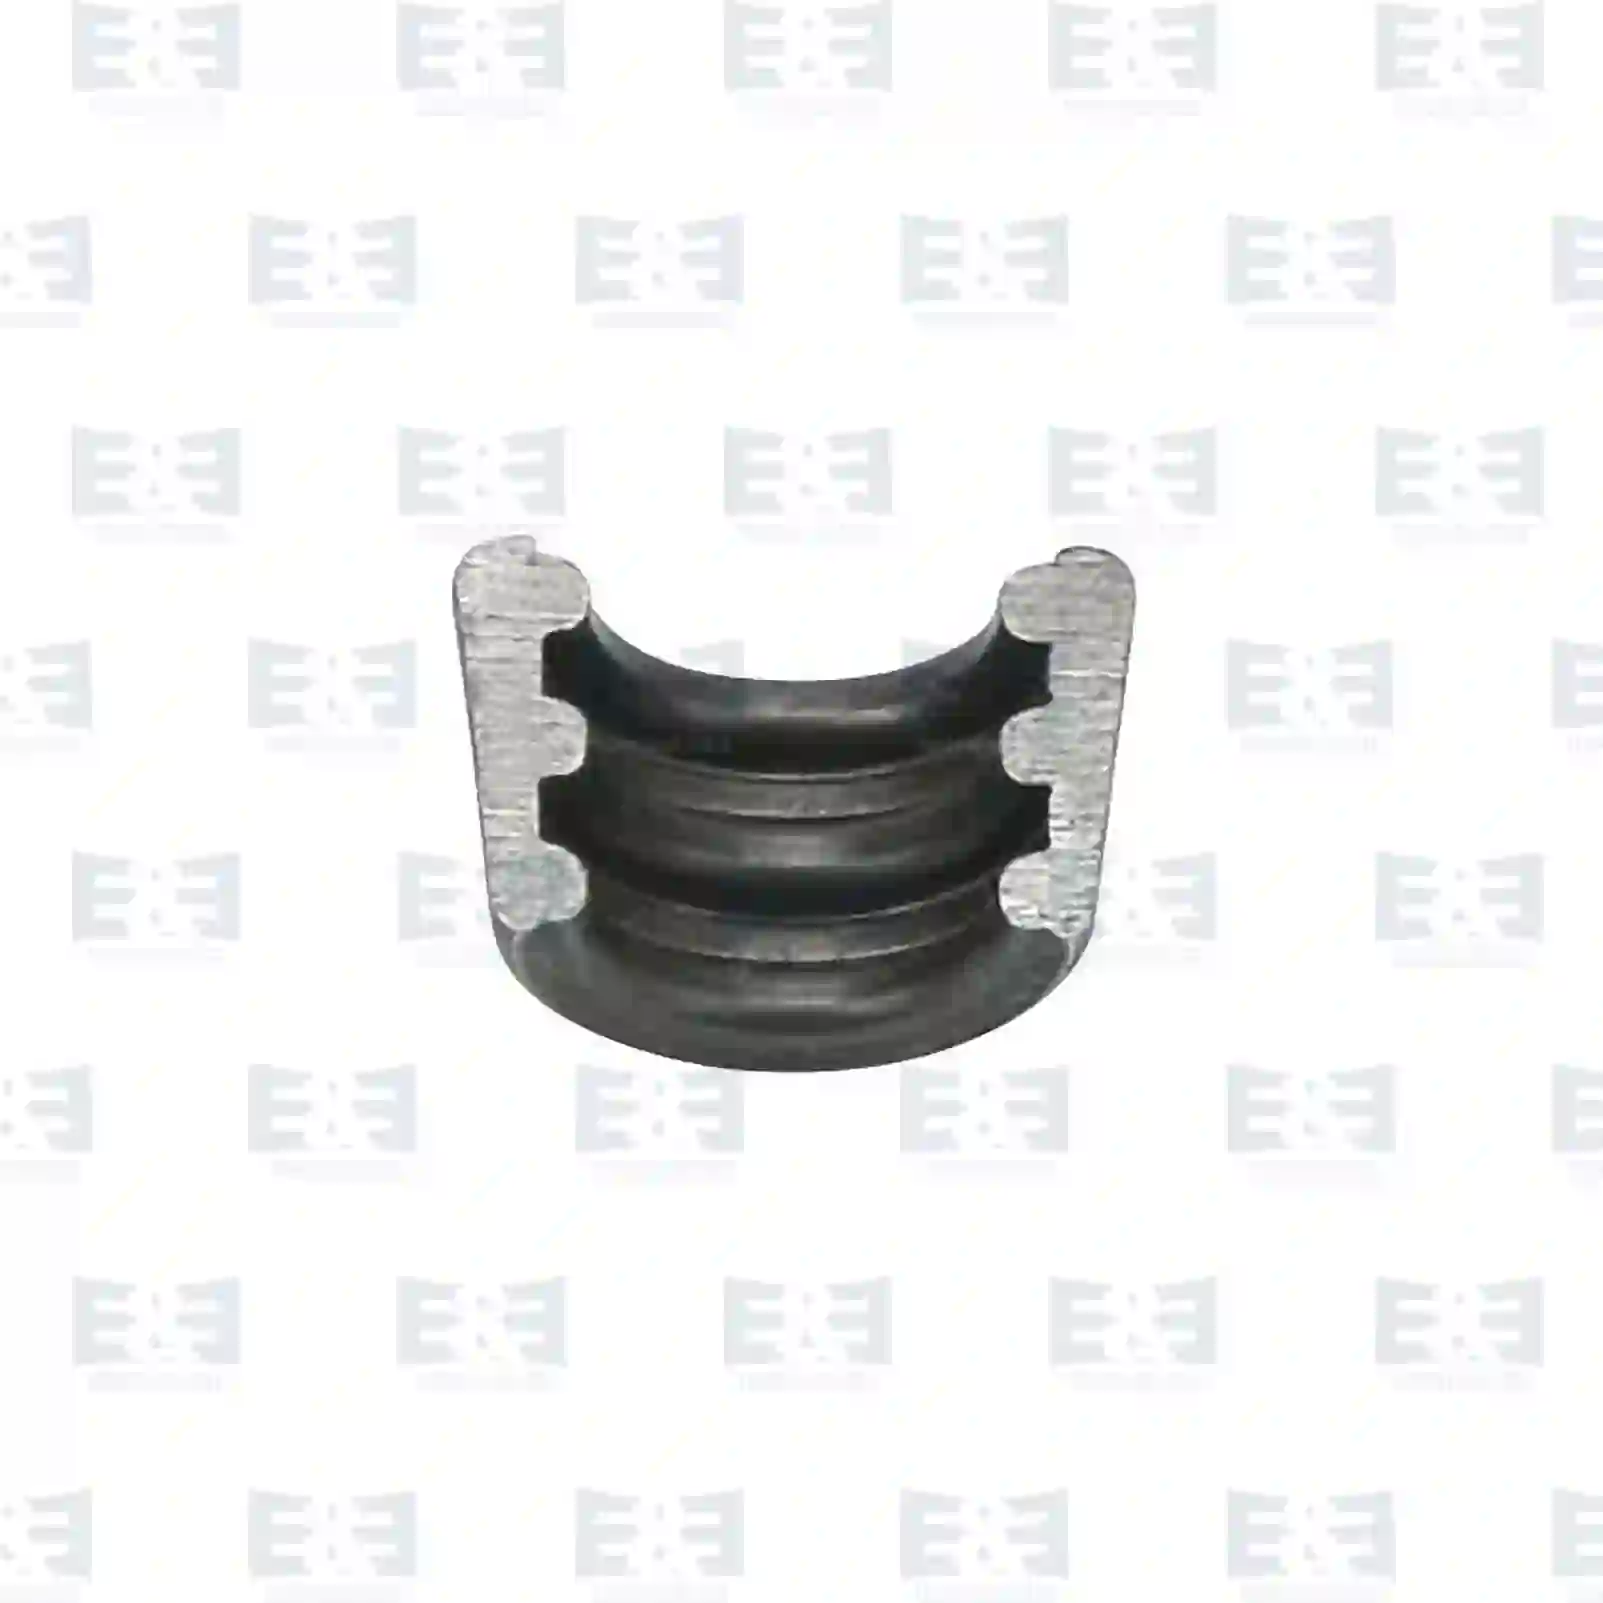  Valve stem key || E&E Truck Spare Parts | Truck Spare Parts, Auotomotive Spare Parts